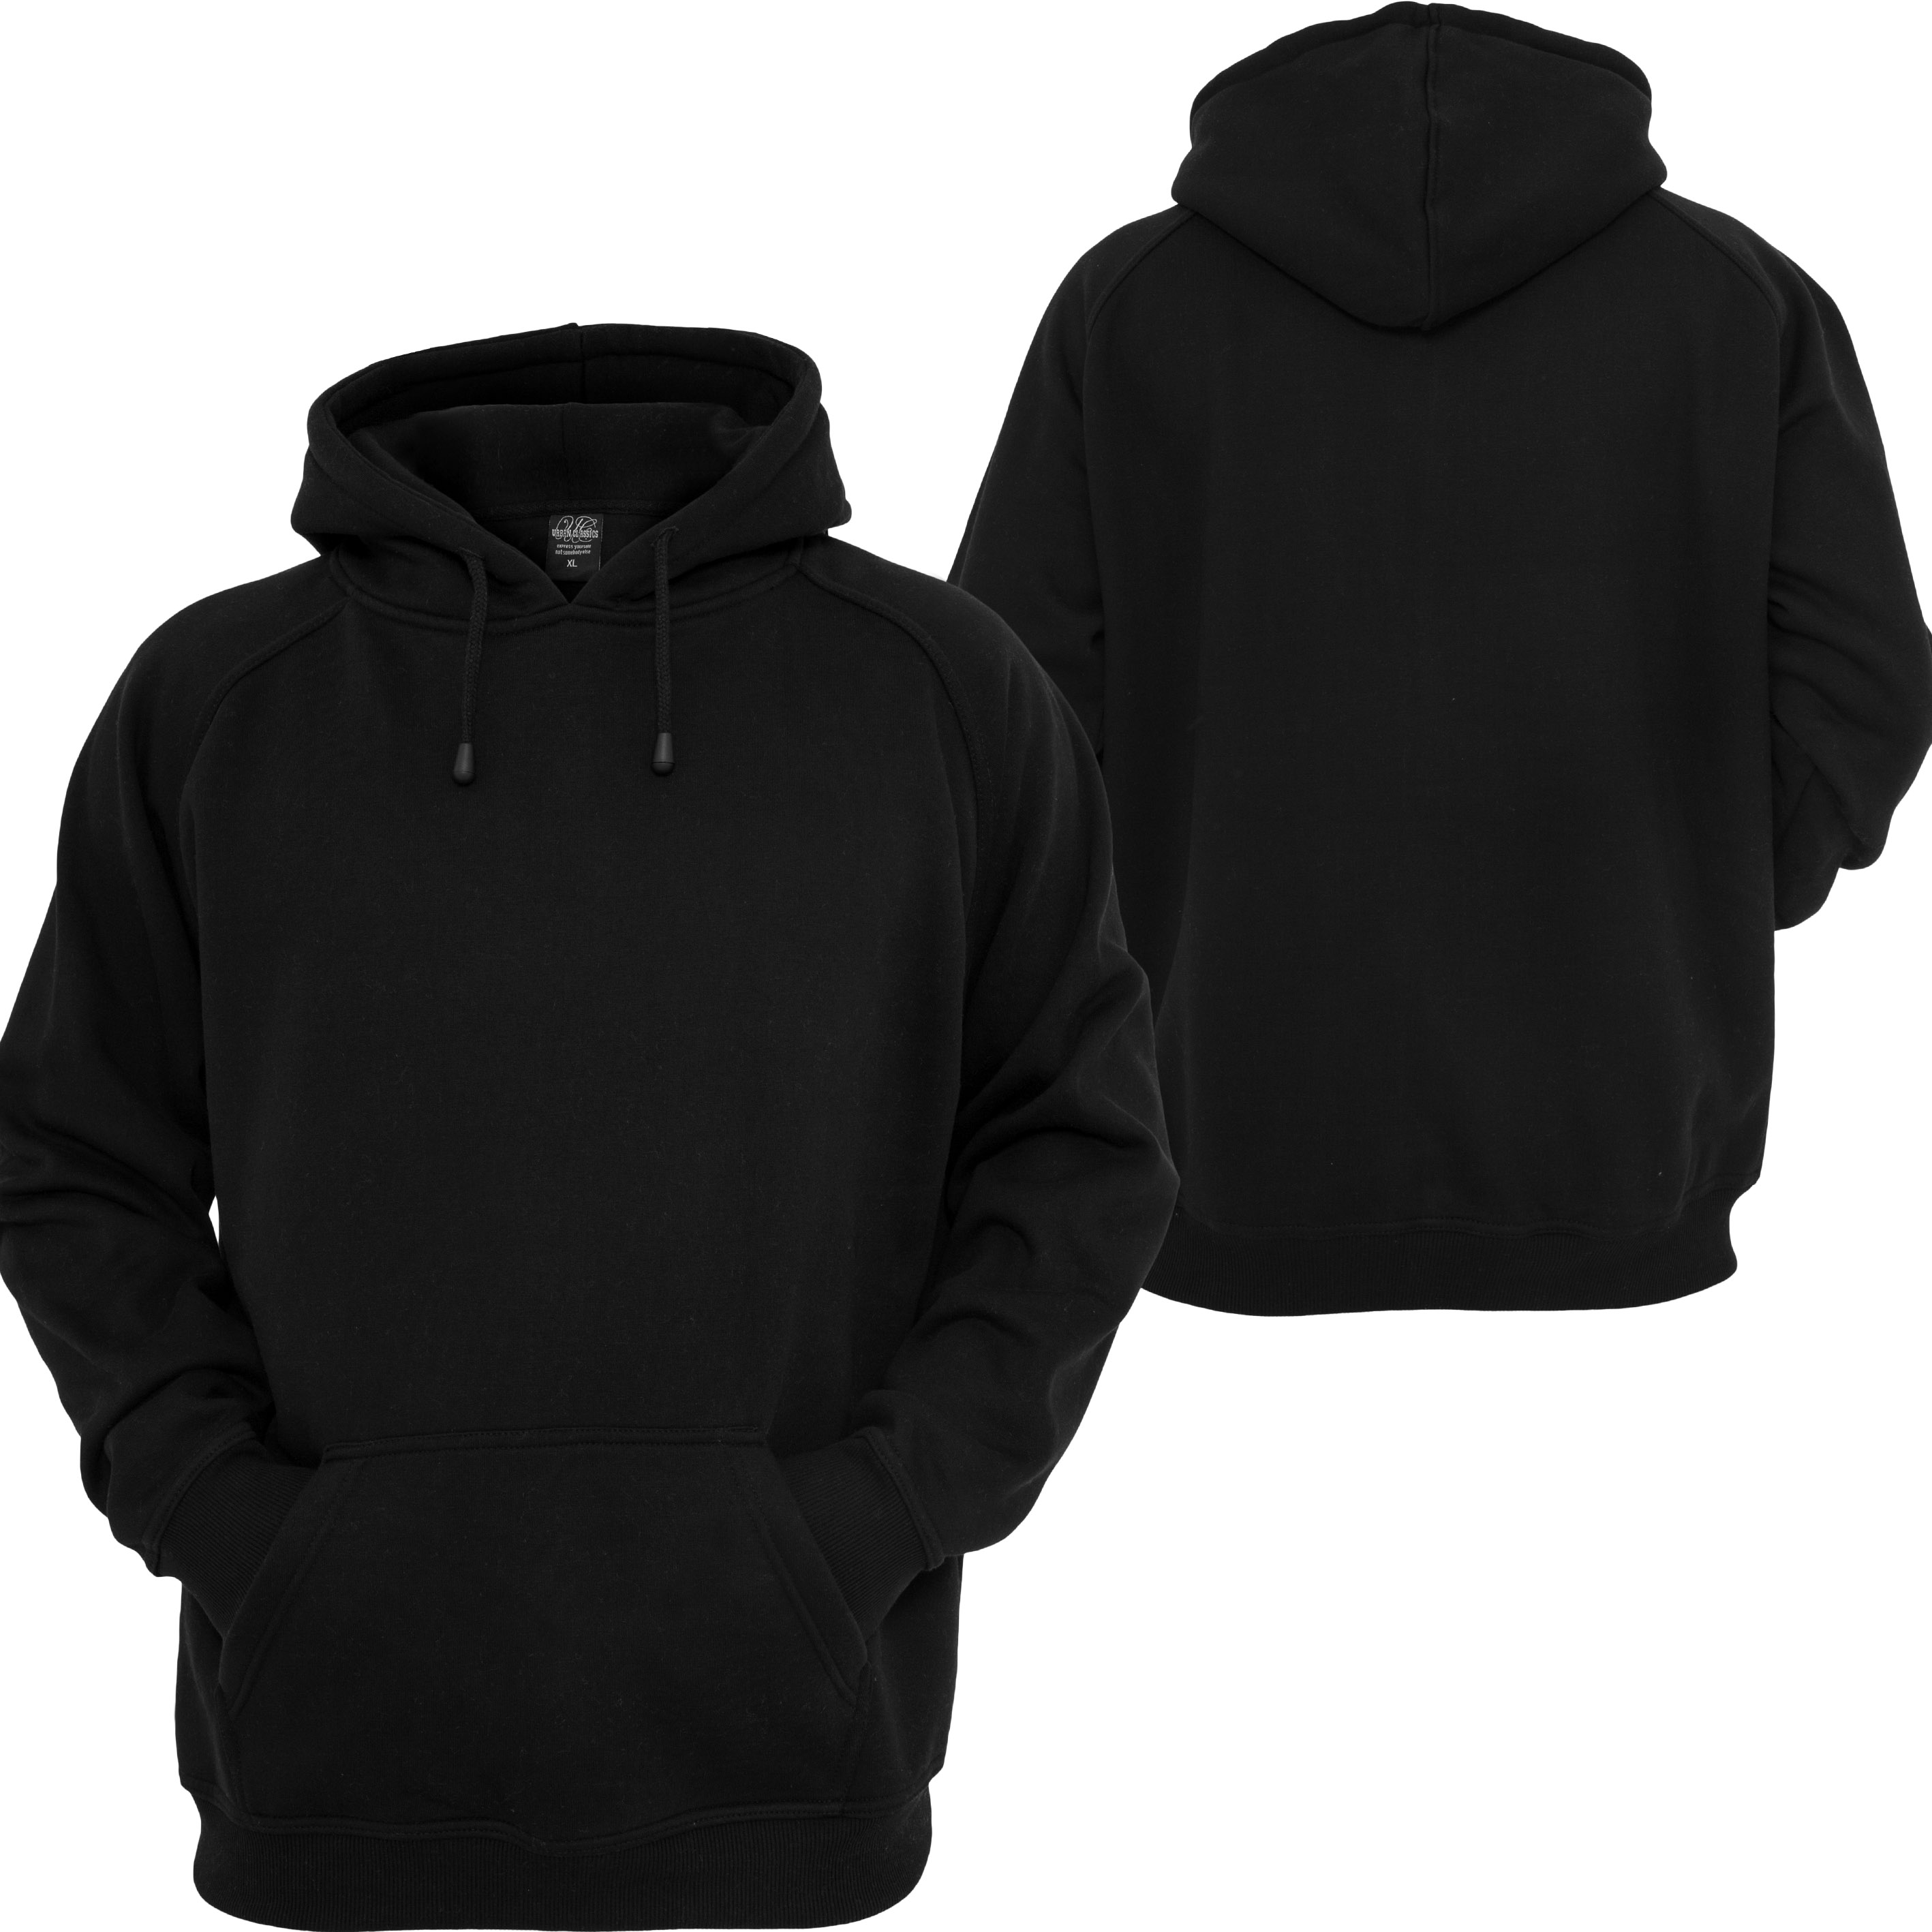 blank-black-hoodie-clipart-best